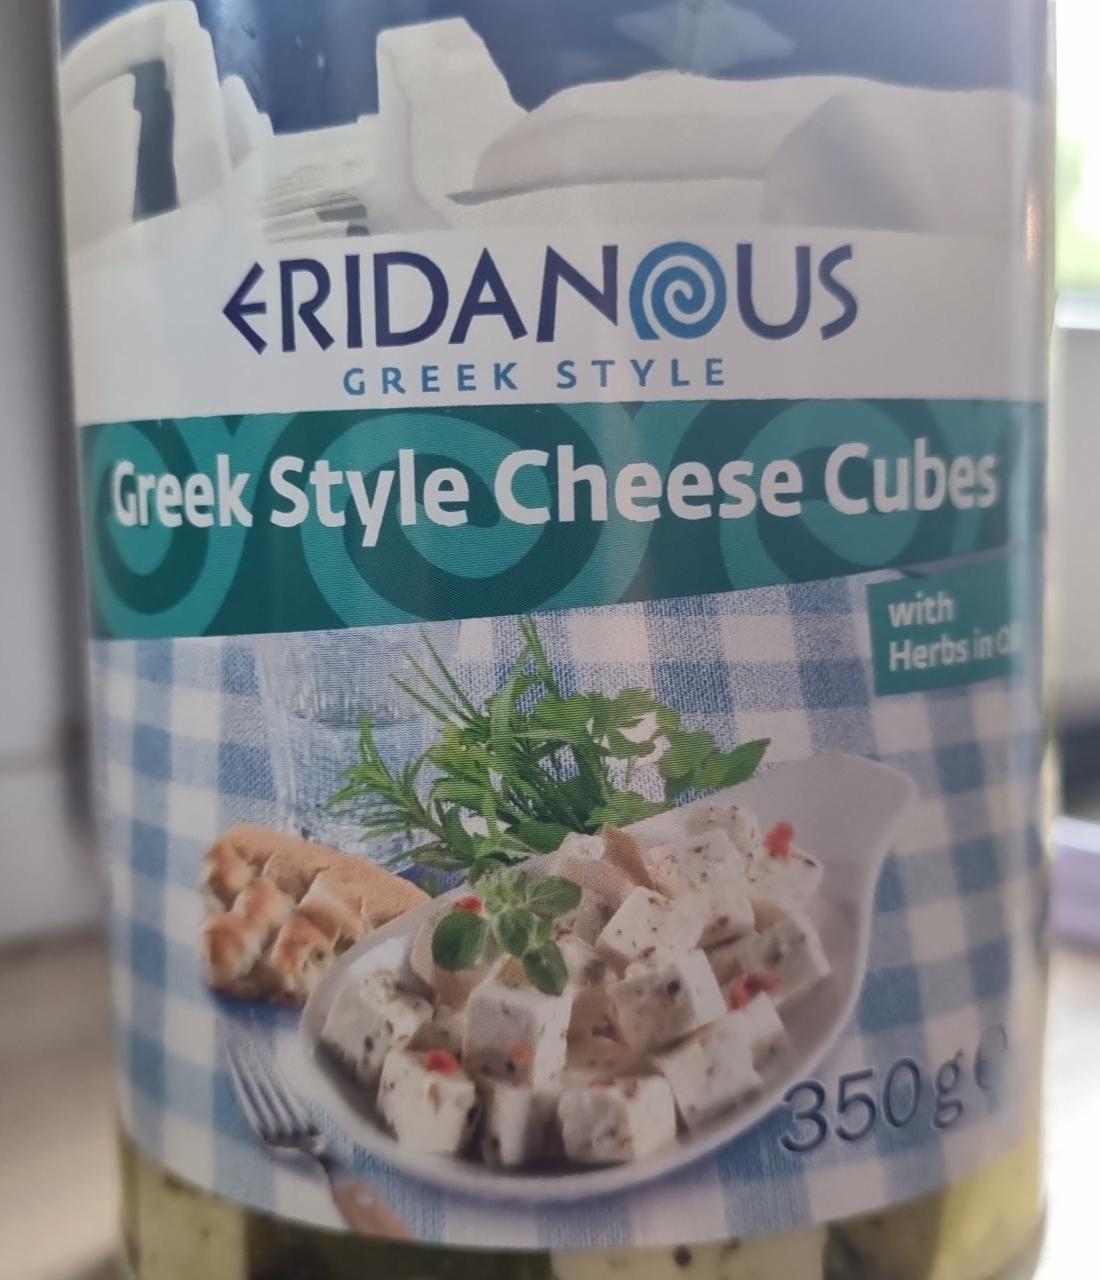 Képek - Greek style cheese cubes Eridanous